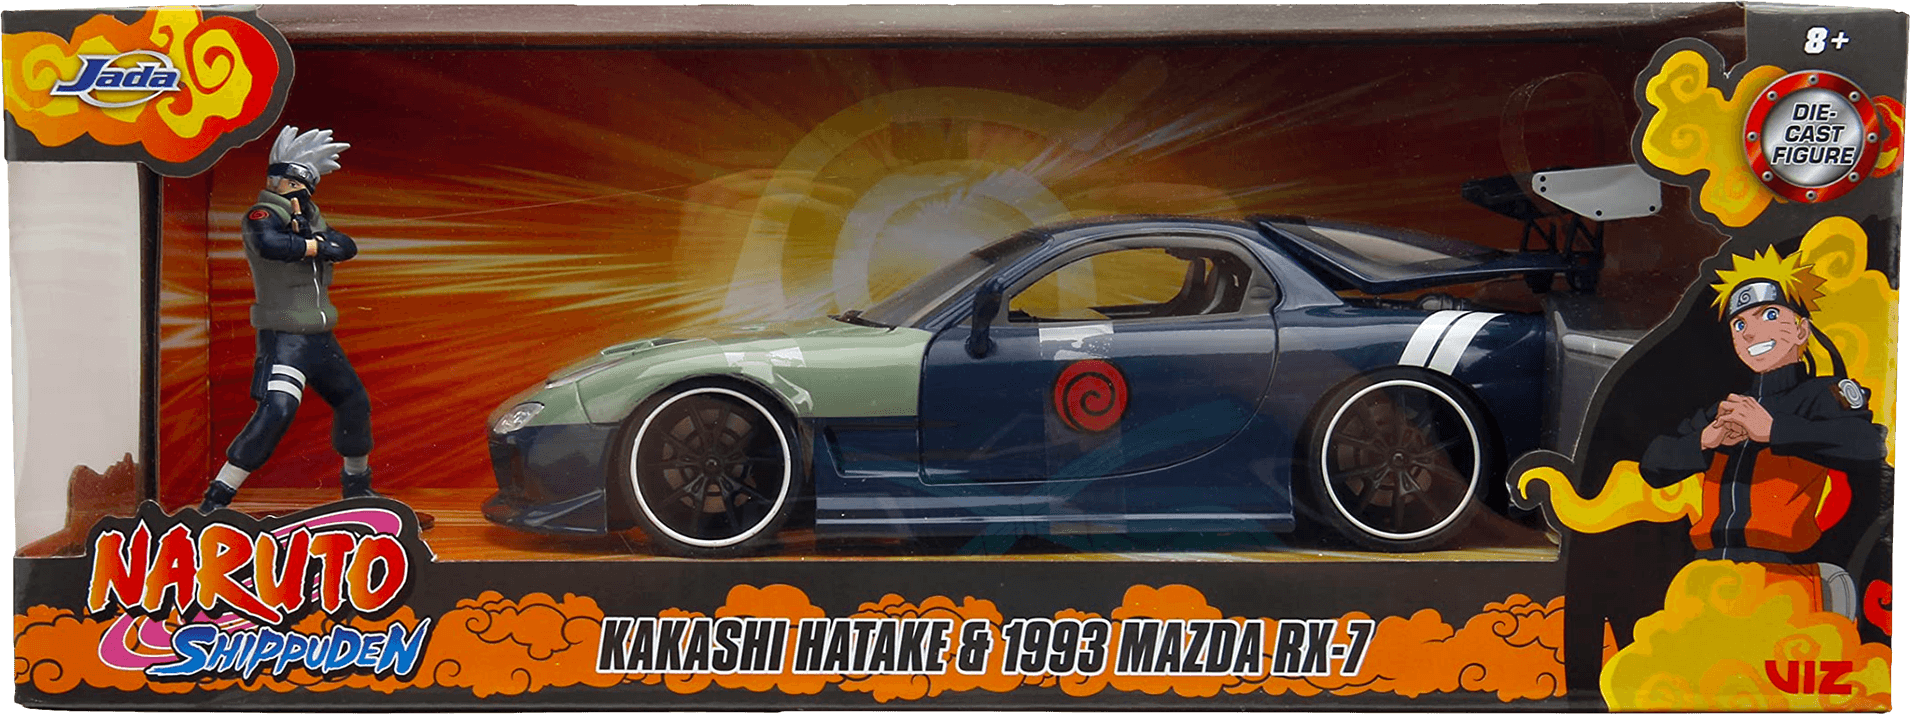 JAD34370 Naruto - Mazda RX-7 With Kakashi Figure 1:24 Scale Vehicle - Jada Toys - Titan Pop Culture